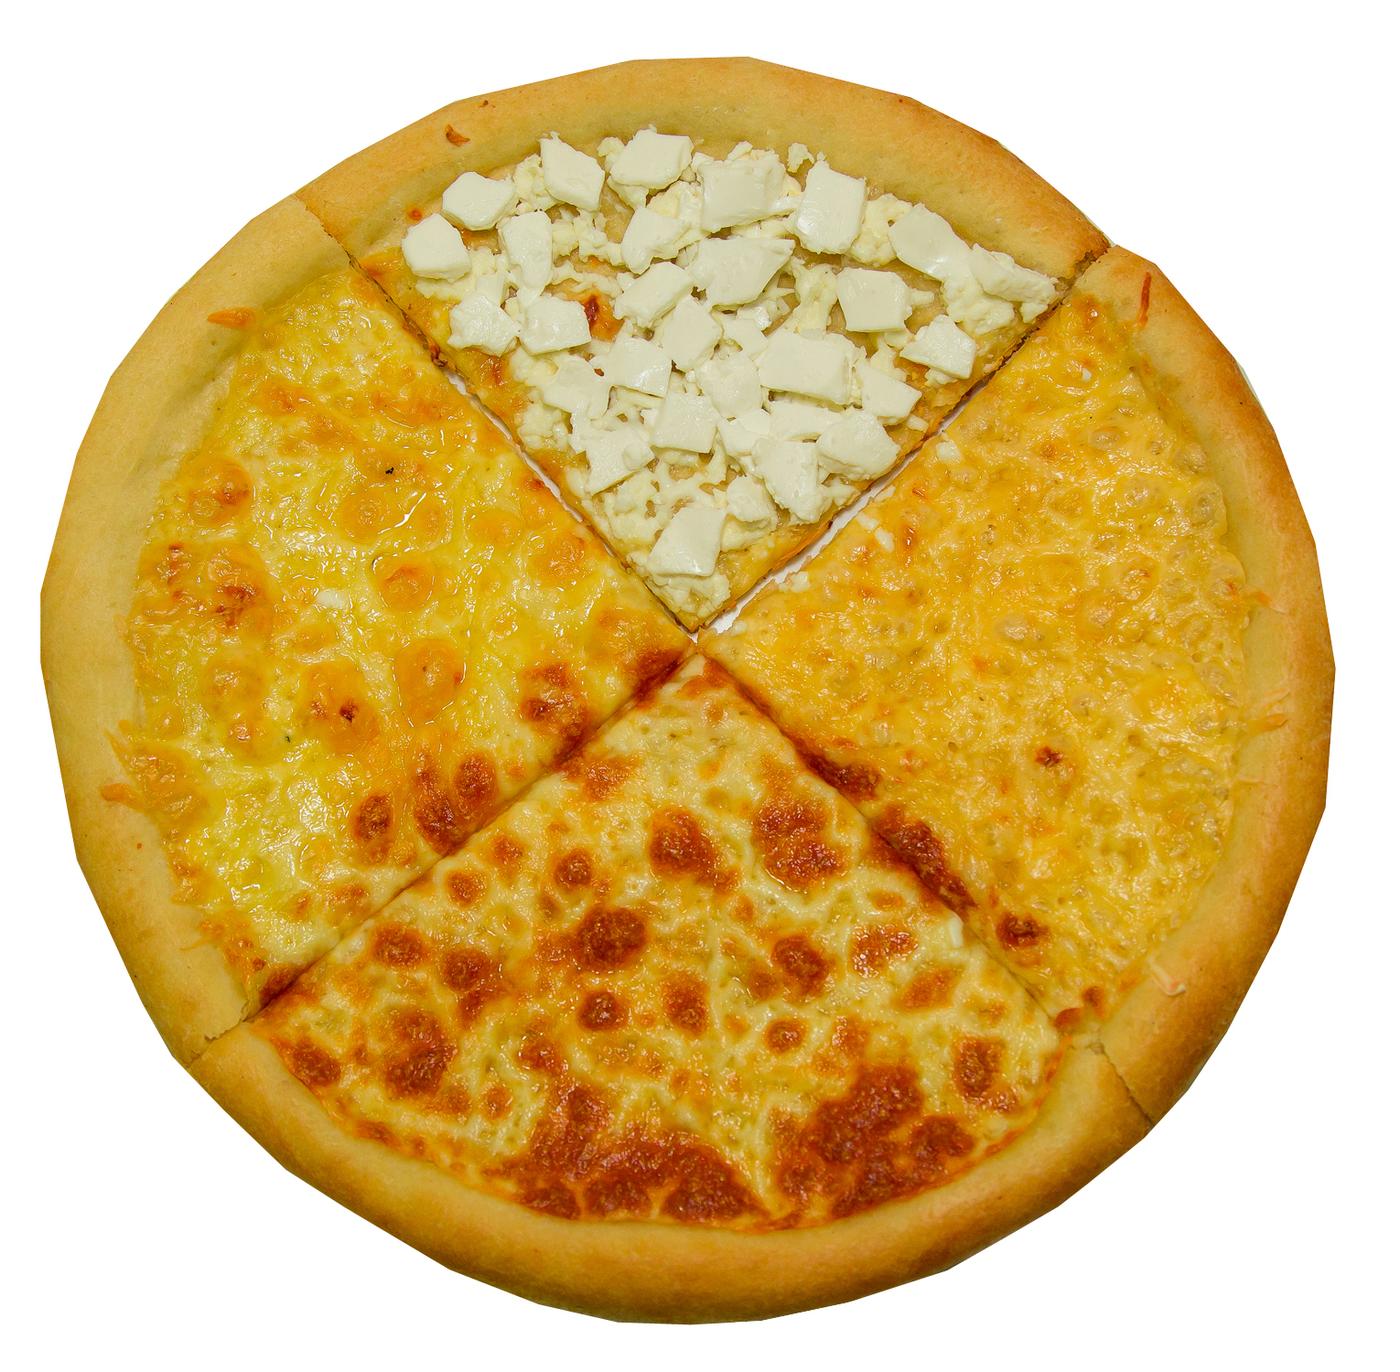 какие сыры входят в пиццу 4 сыра классика фото 46